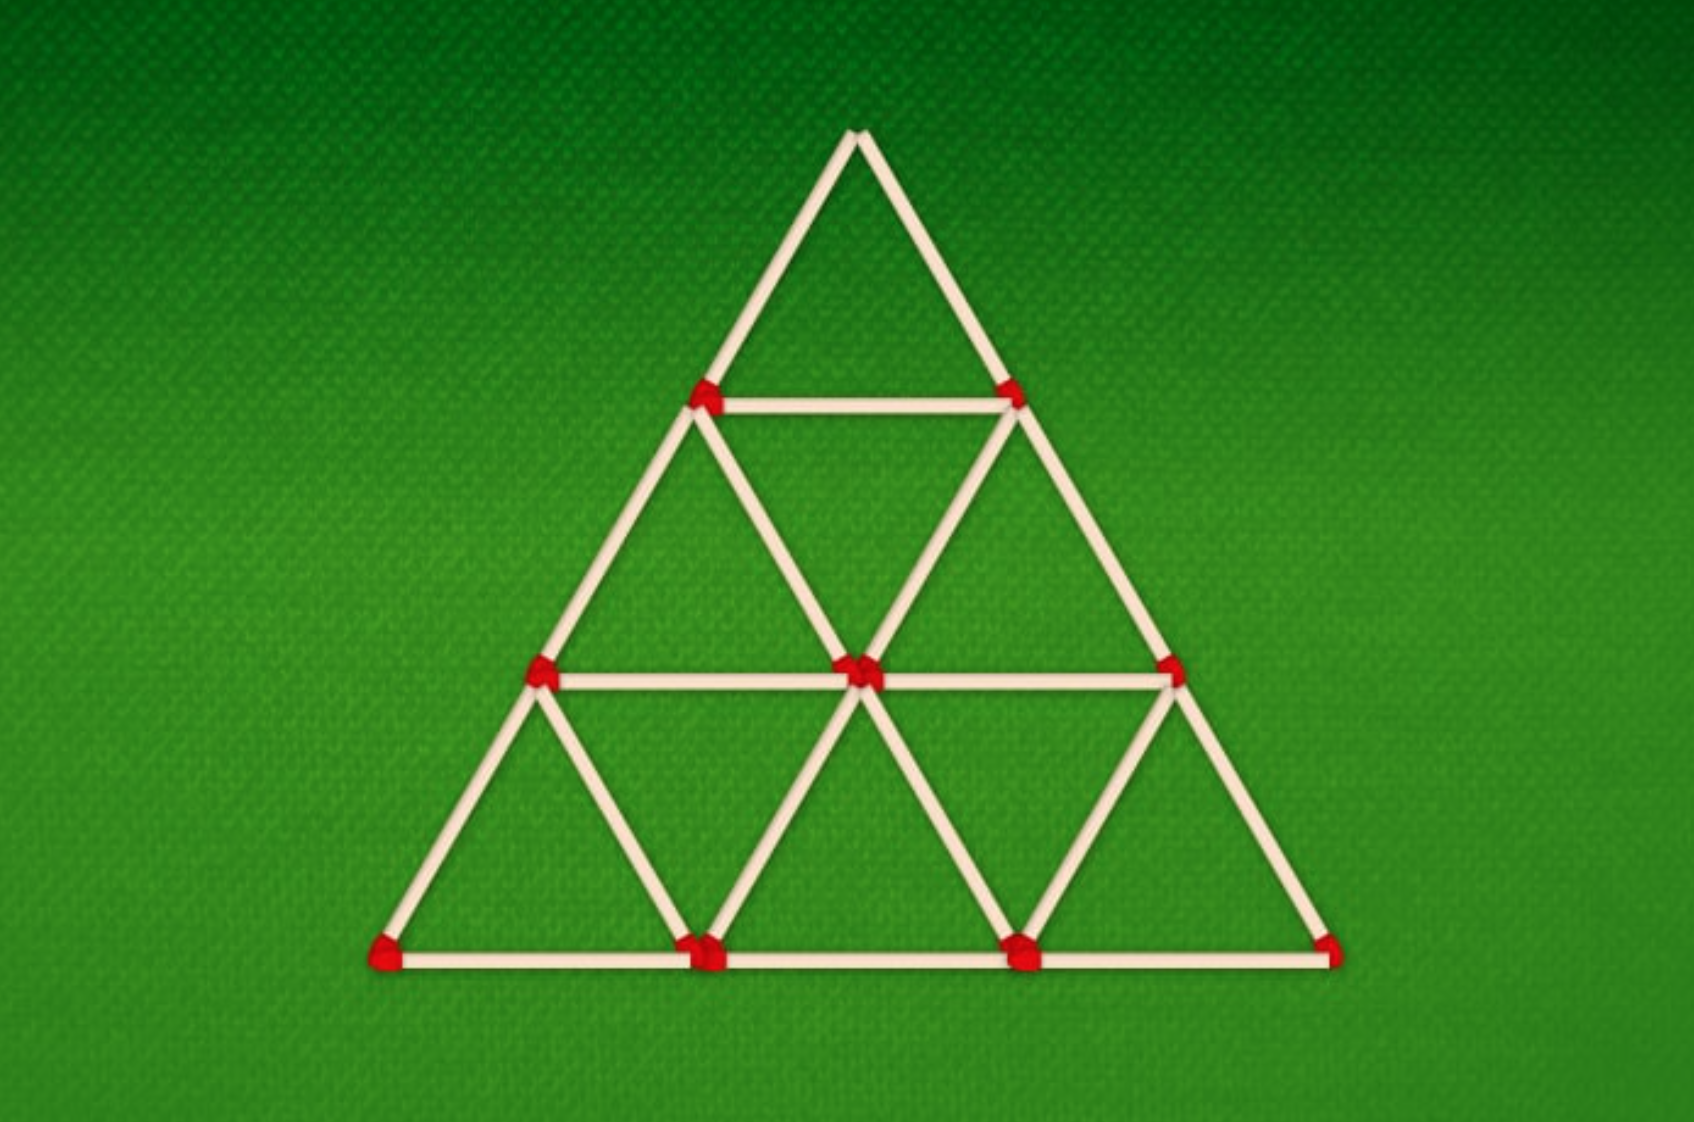 Из 9 треугольников 1. Уберите 5 спичек чтобы получилось 5 треугольников. Головоломка 5 спичек 5 треугольников. 5 Спичек 4 треугольника. Уберите 4 спички чтобы получилось 5 треугольников.